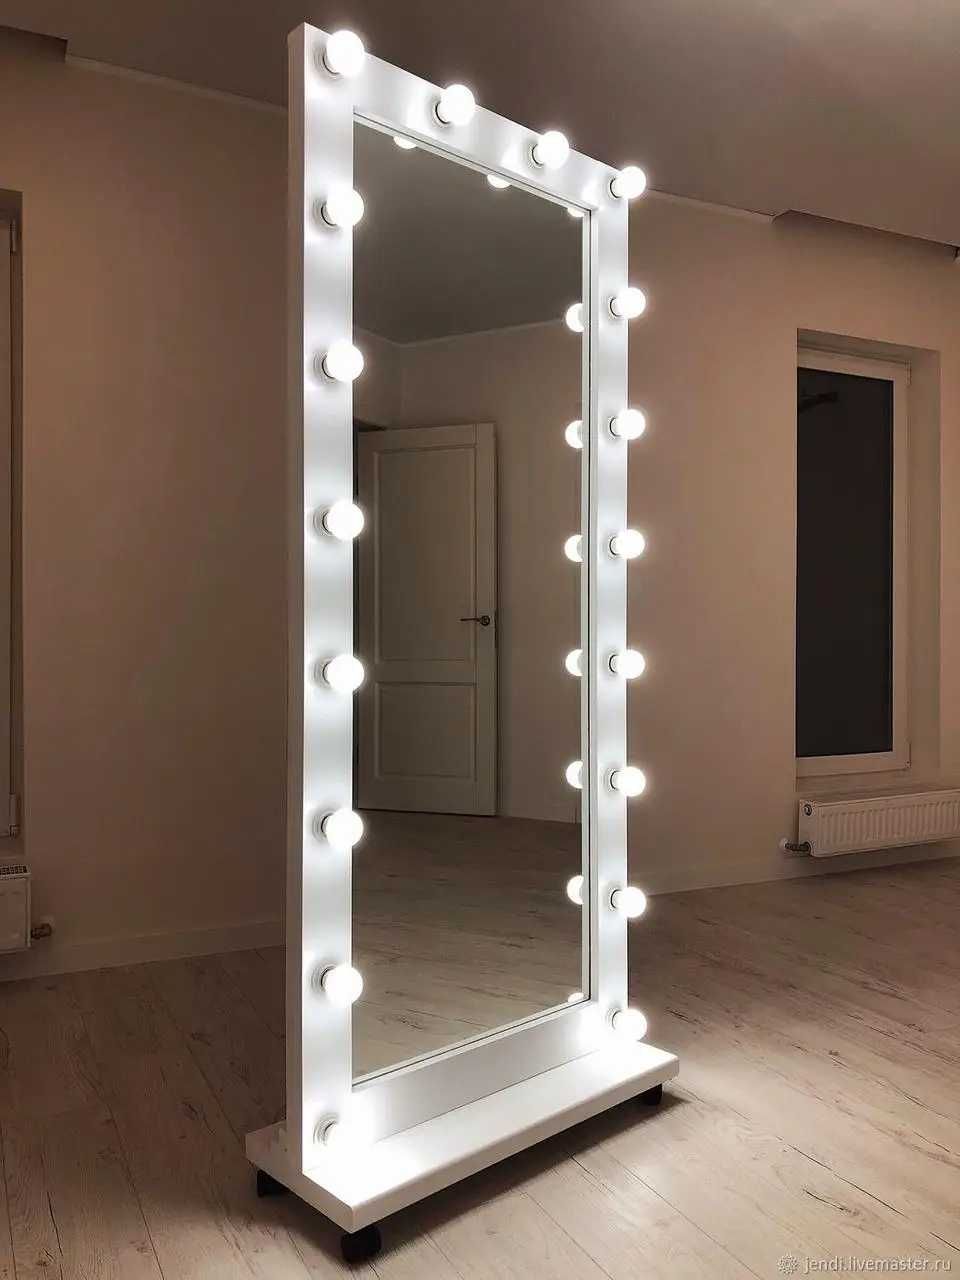 Большое гримерное зеркало в раме с подсветкой.Макияжное зеркало 180х70